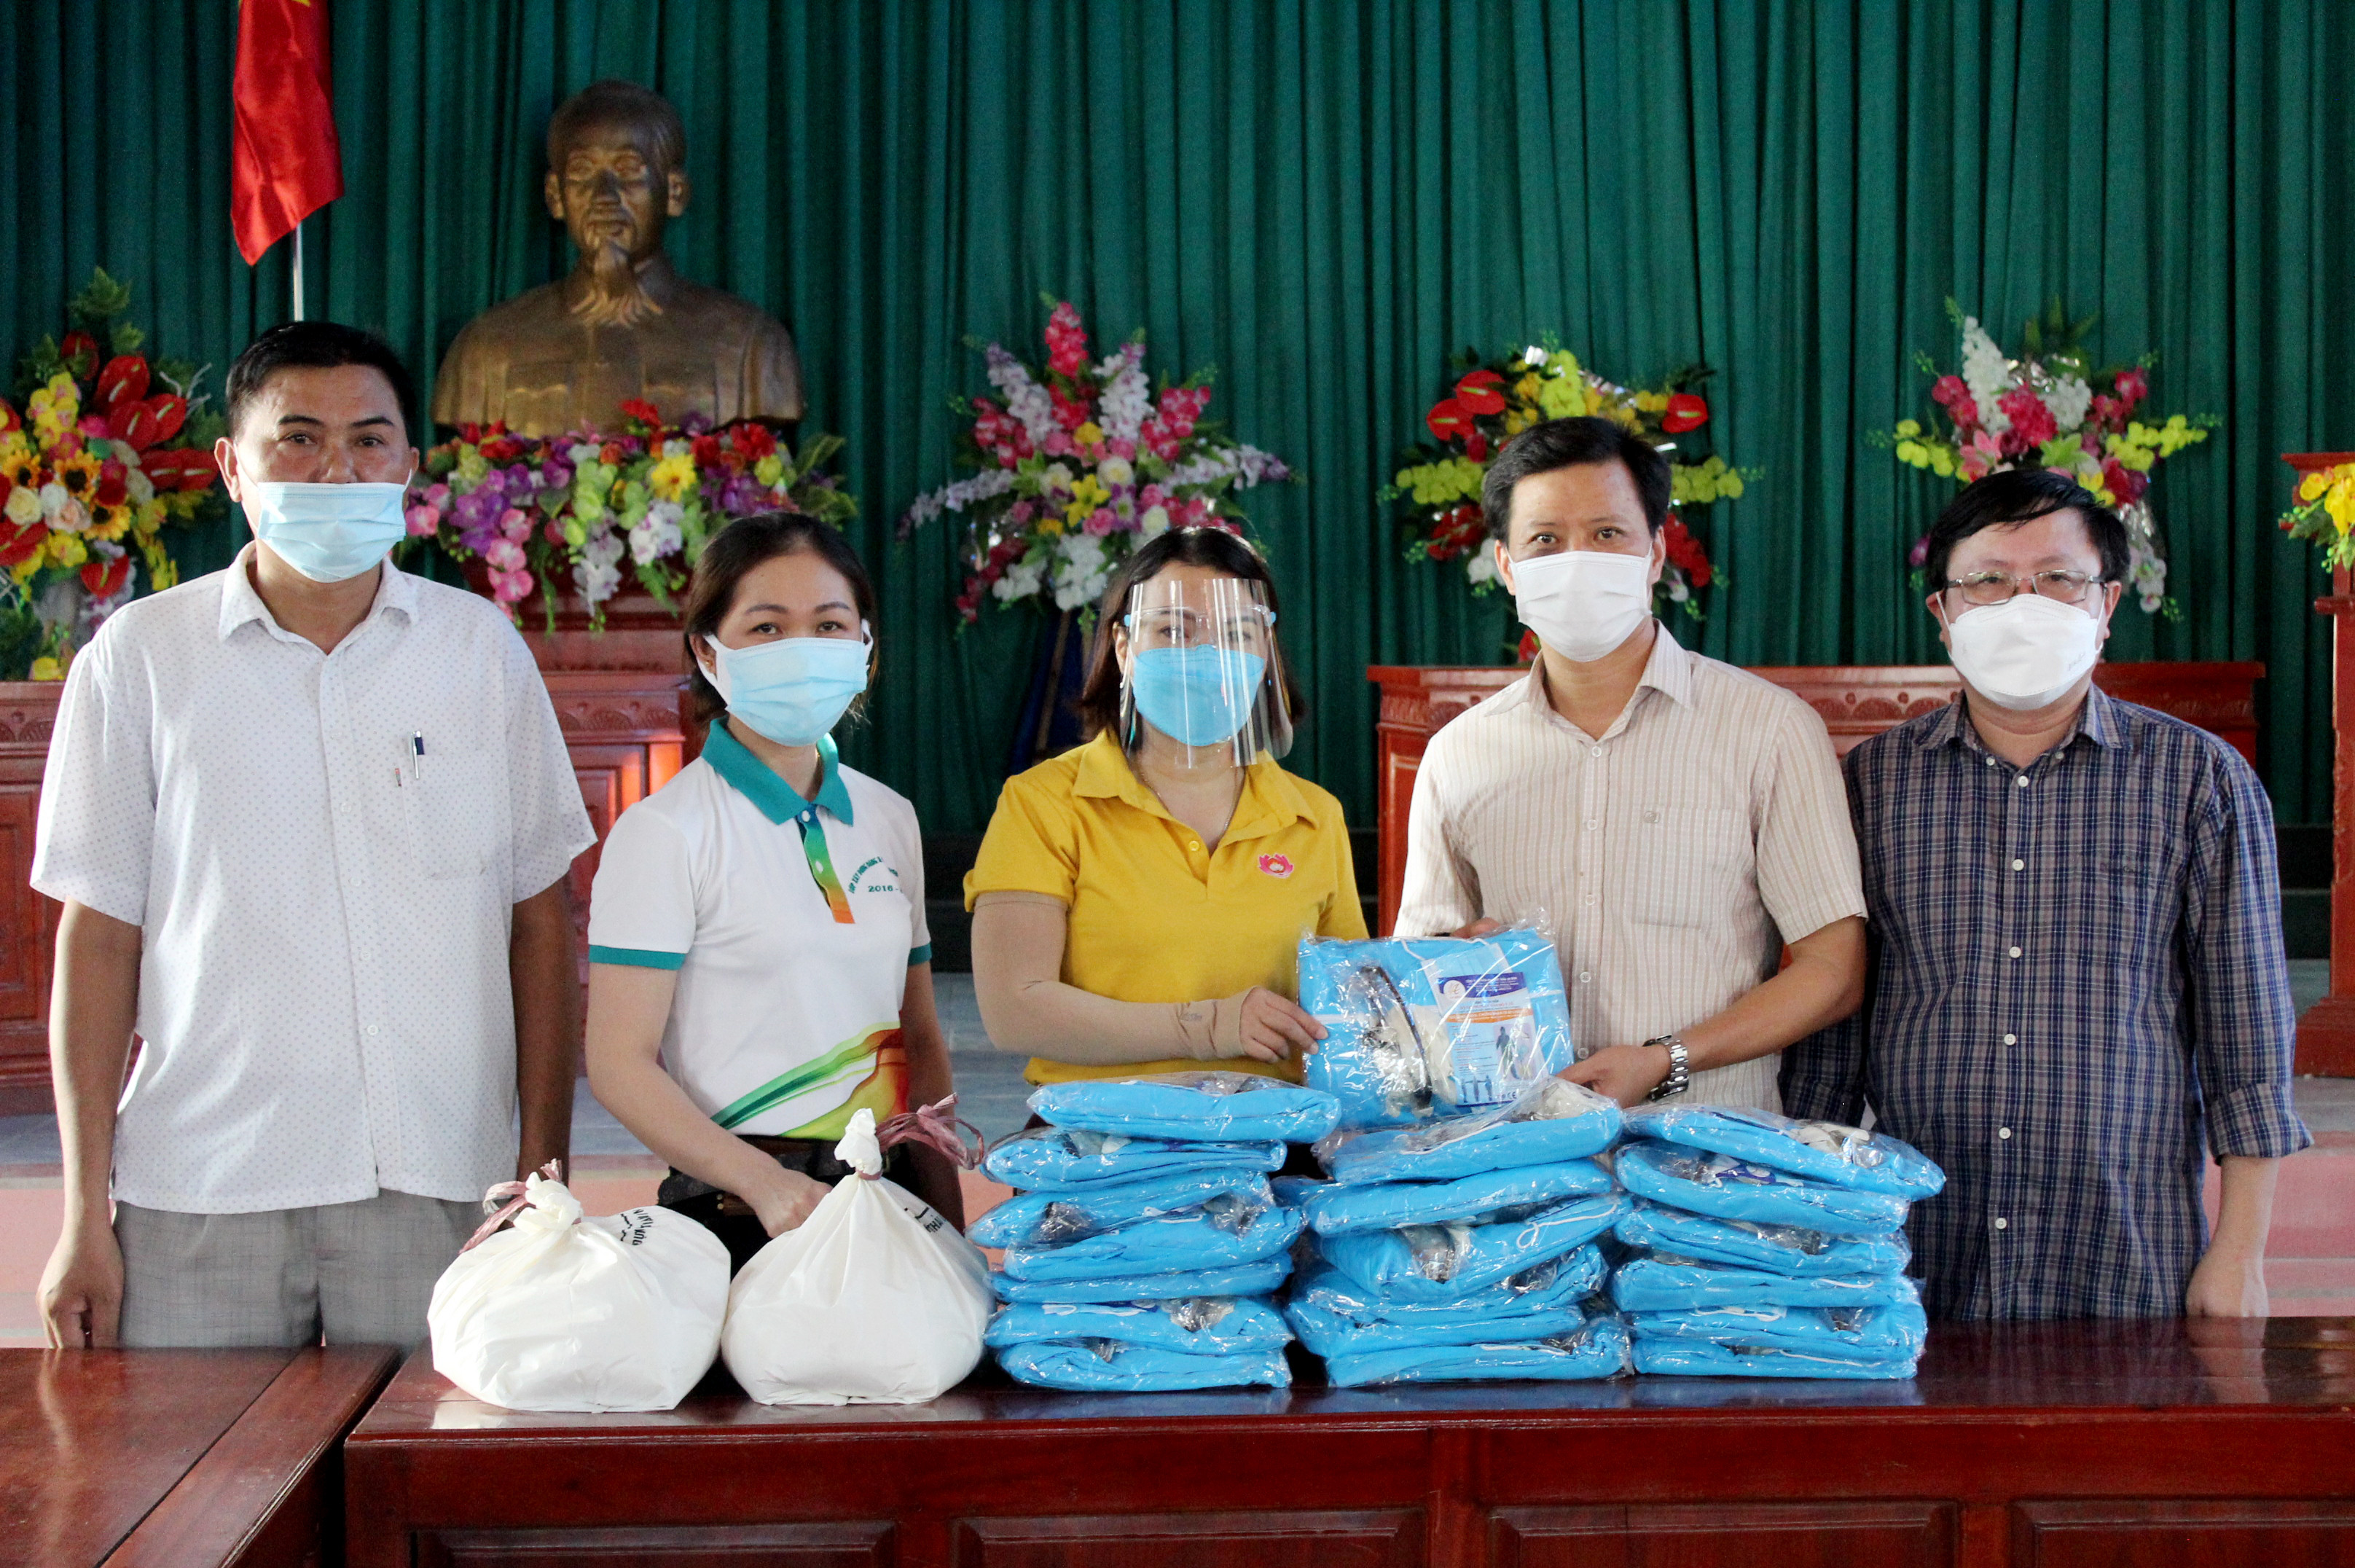 Măt trận Tổ quốc huyện Quỳnh Lưu đã đến trao tặng vật tư y tế và nhu yếu phẩm cho xã Quỳnh Lương. Ảnh: Thanh Toàn